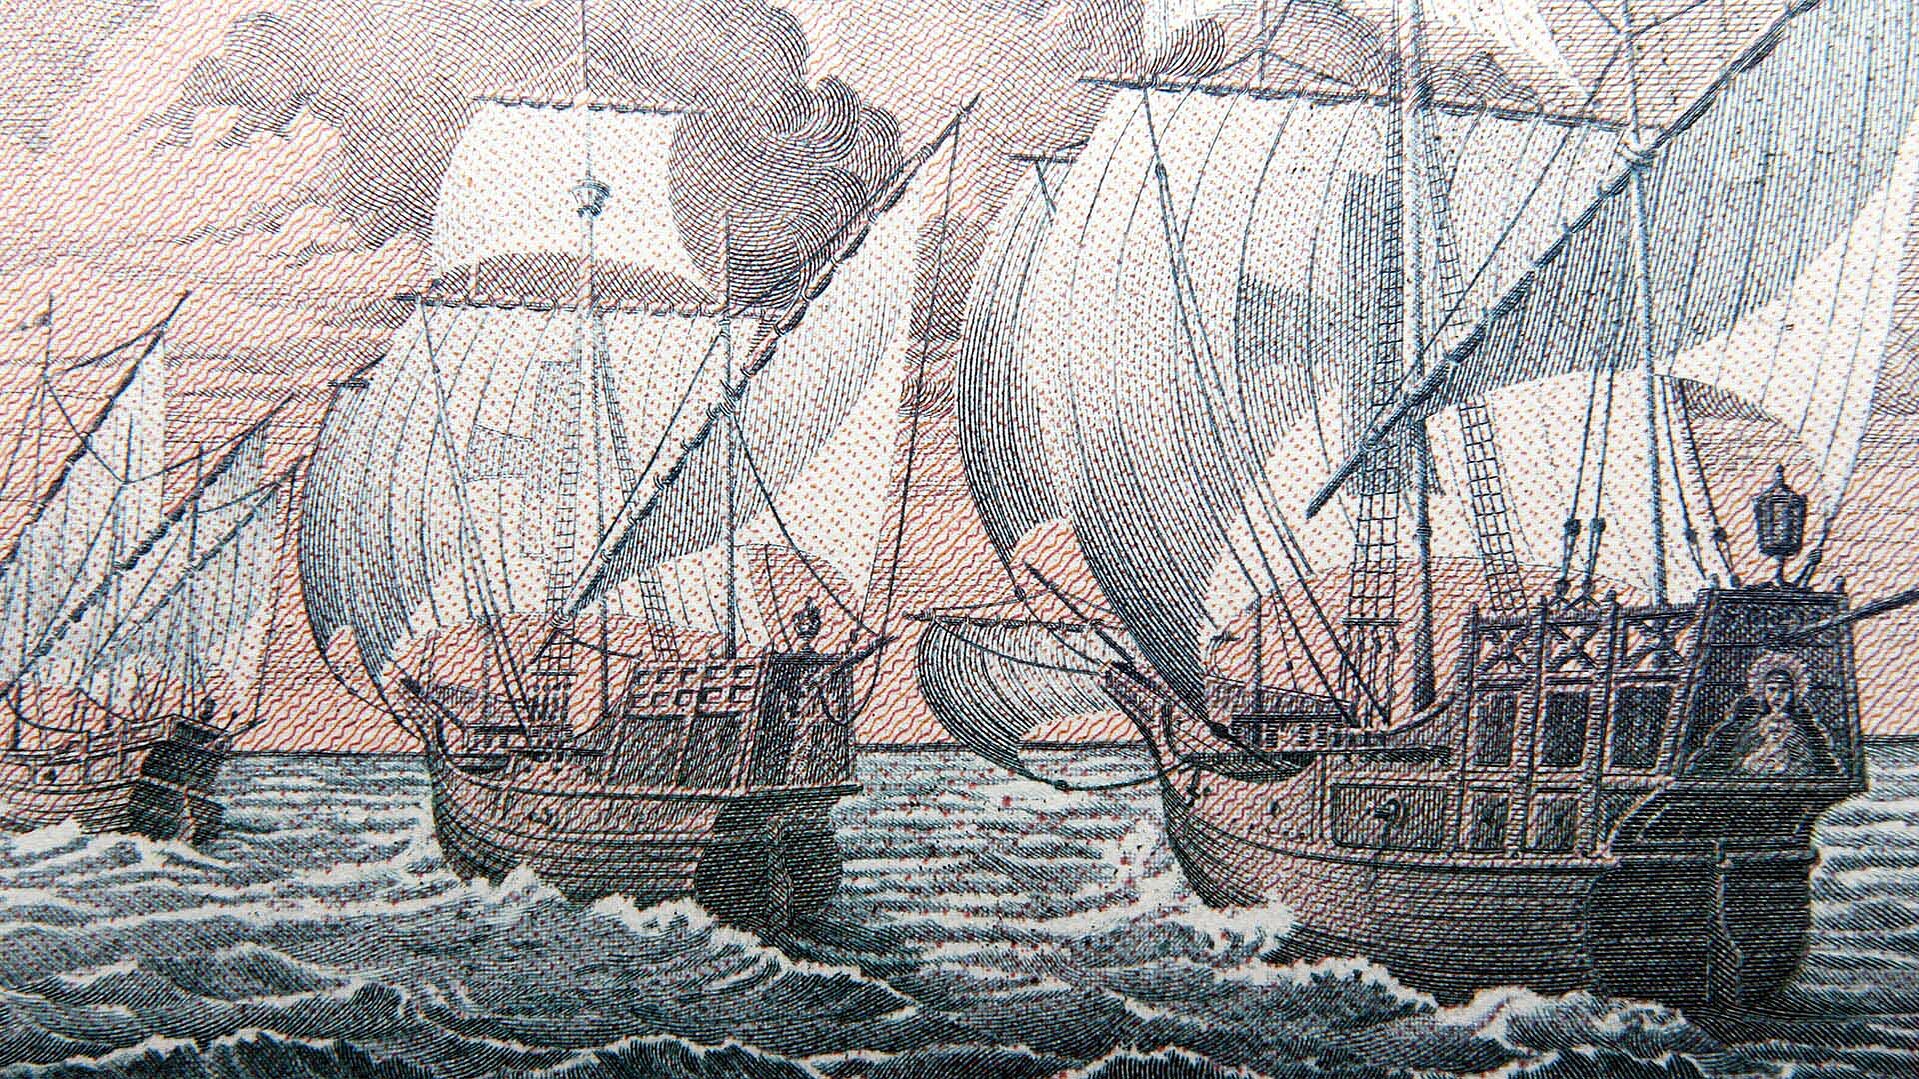 Schiffsflotte von Kolumbus